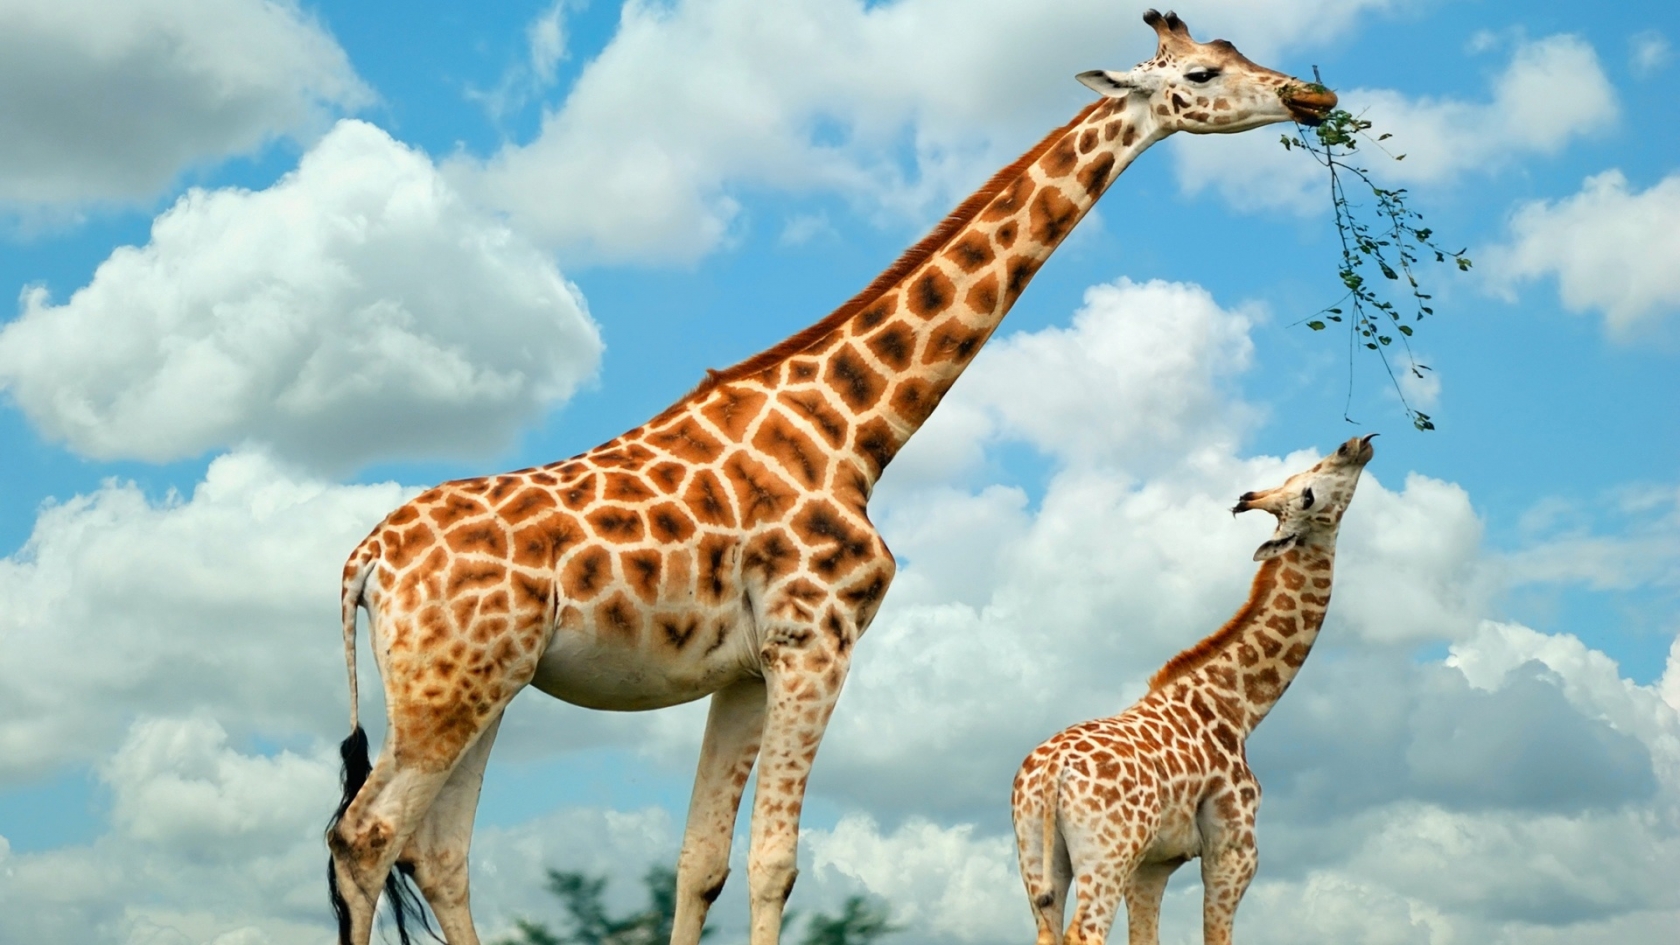 Happy Giraffe Family for 1680 x 945 HDTV resolution